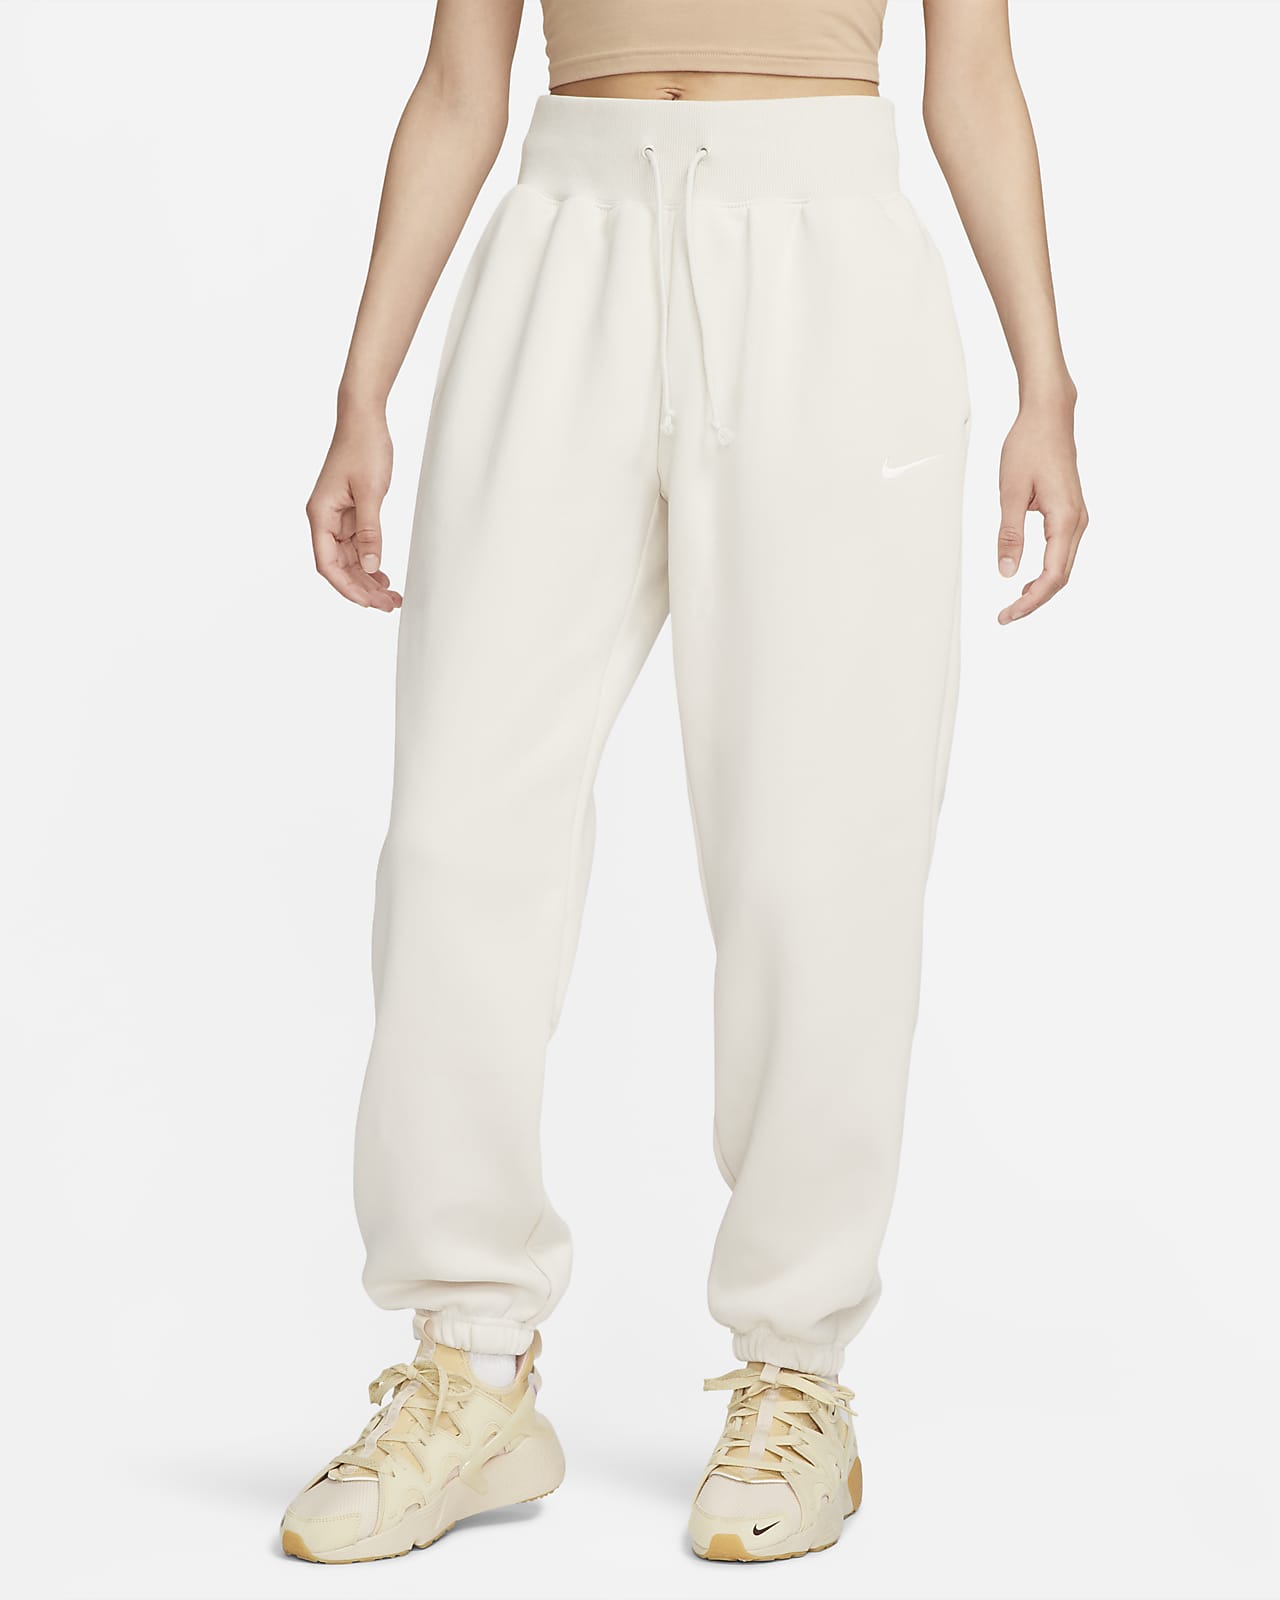 Γυναικείο ψηλόμεσο παντελόνι φόρμας σε φαρδιά γραμμή Nike Sportswear Phoenix Fleece